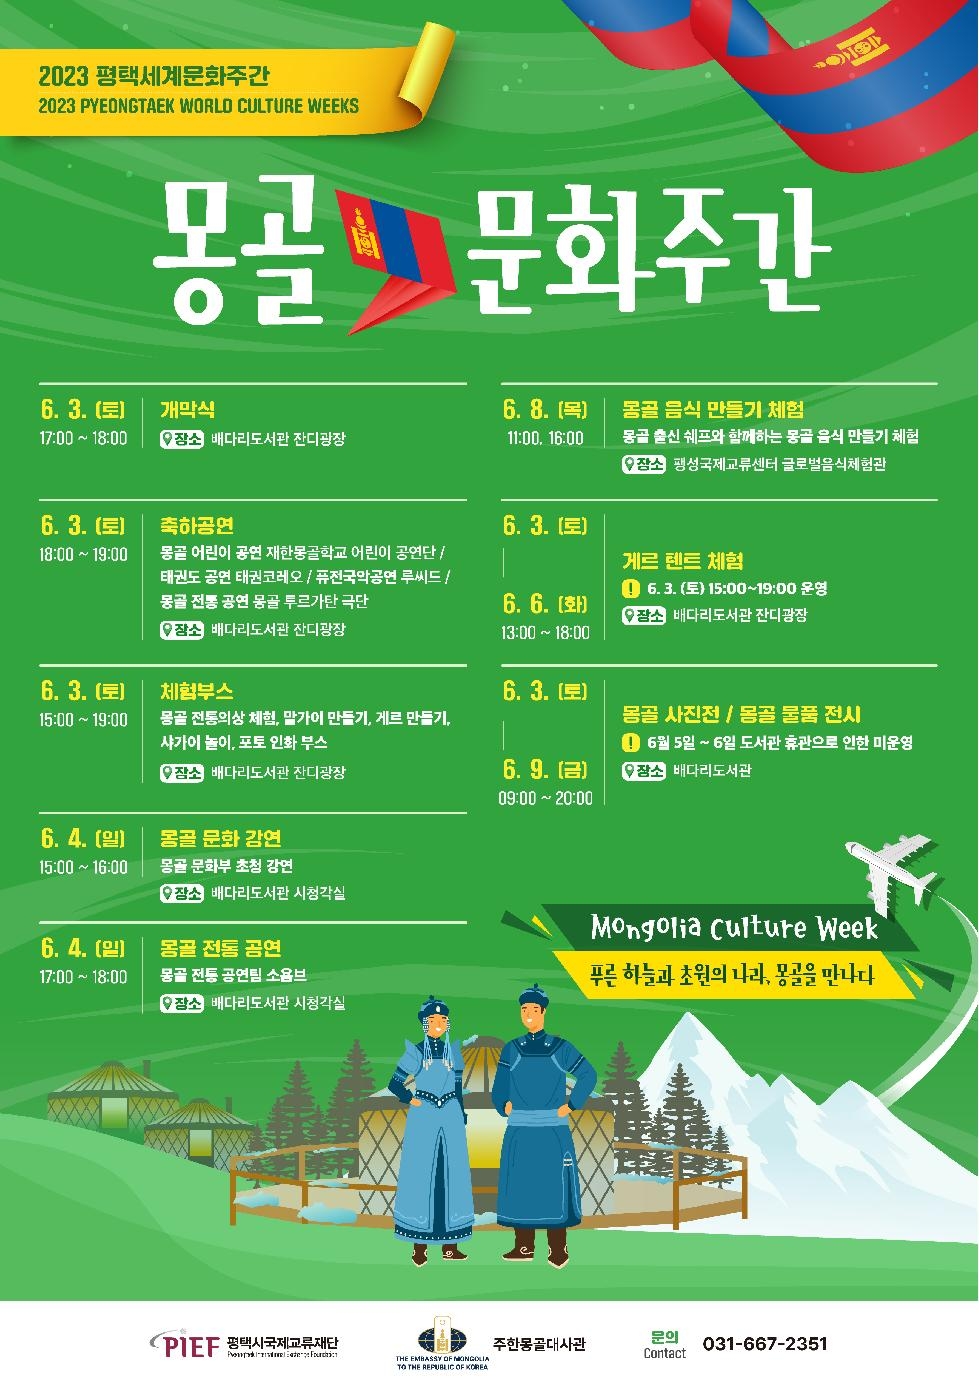 평택시국제교류재단  「2023 평택세계문화주간: 몽골문화주간」 개최